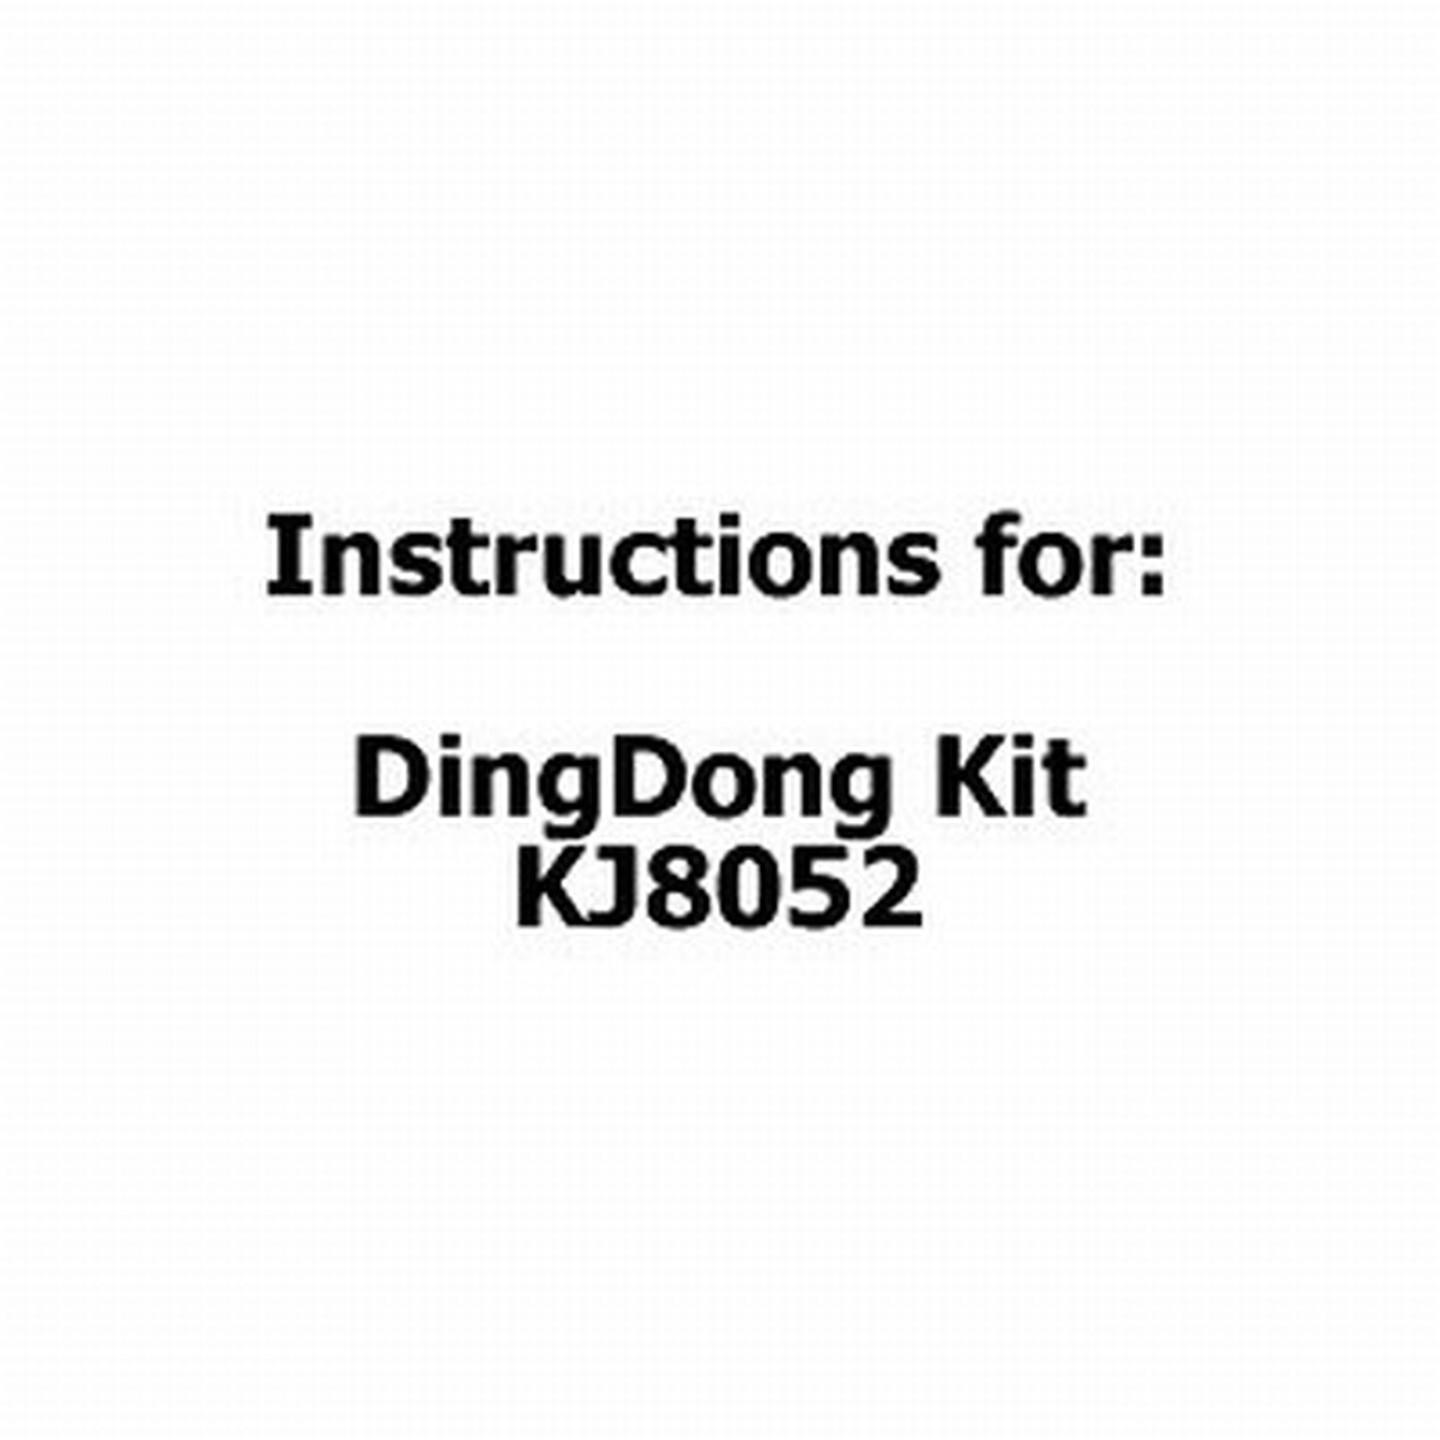 Instructions for DingDong Kit KJ8052